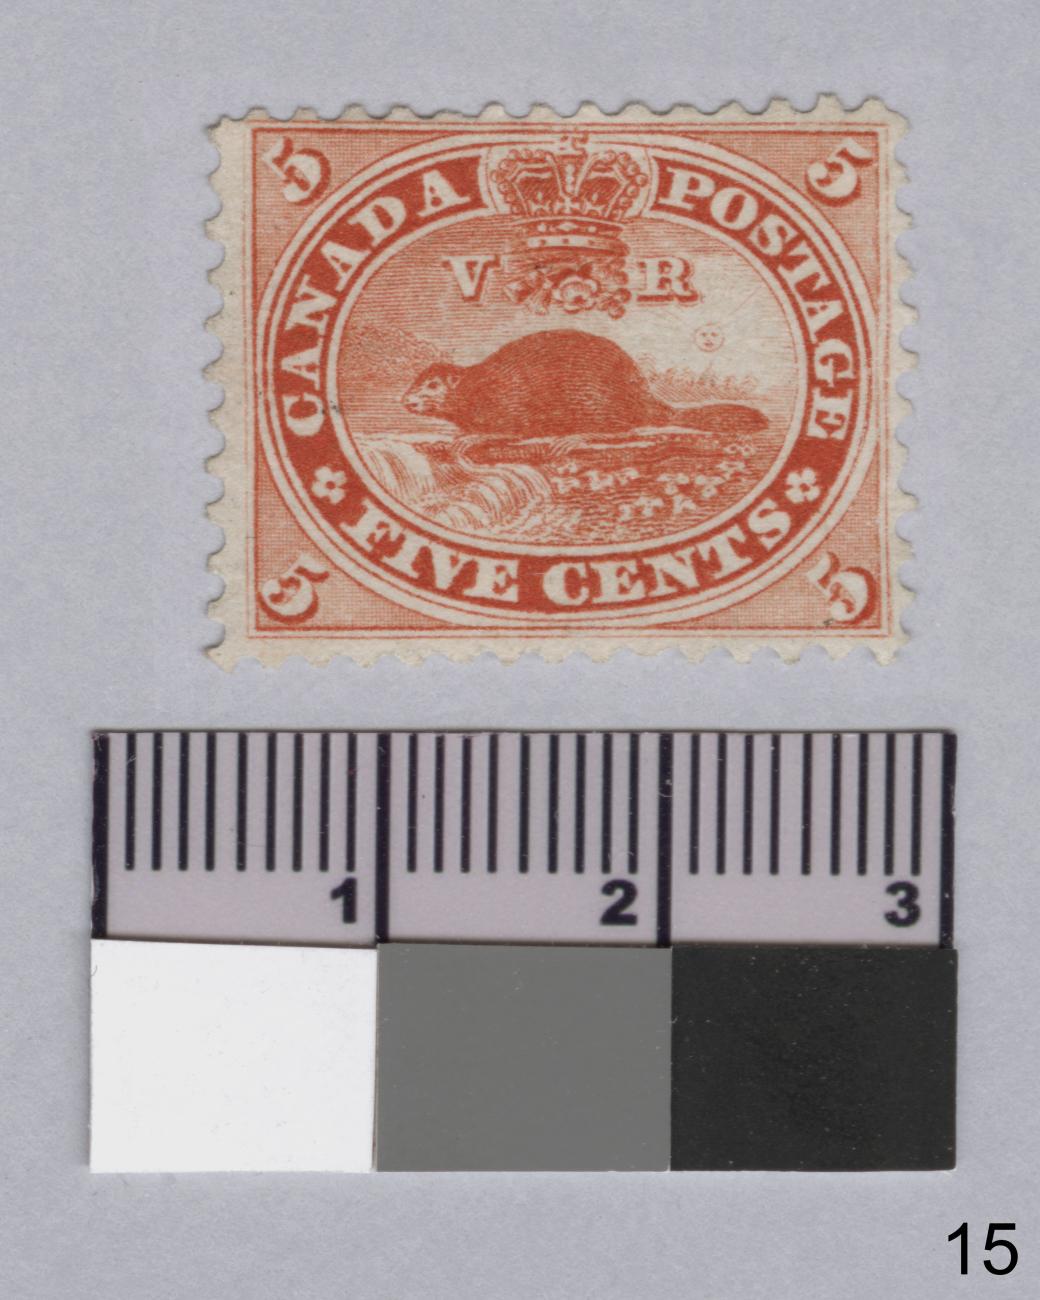 Photo d’un timbre-poste avec une image castor et une règle en dessous pour l’échelle.